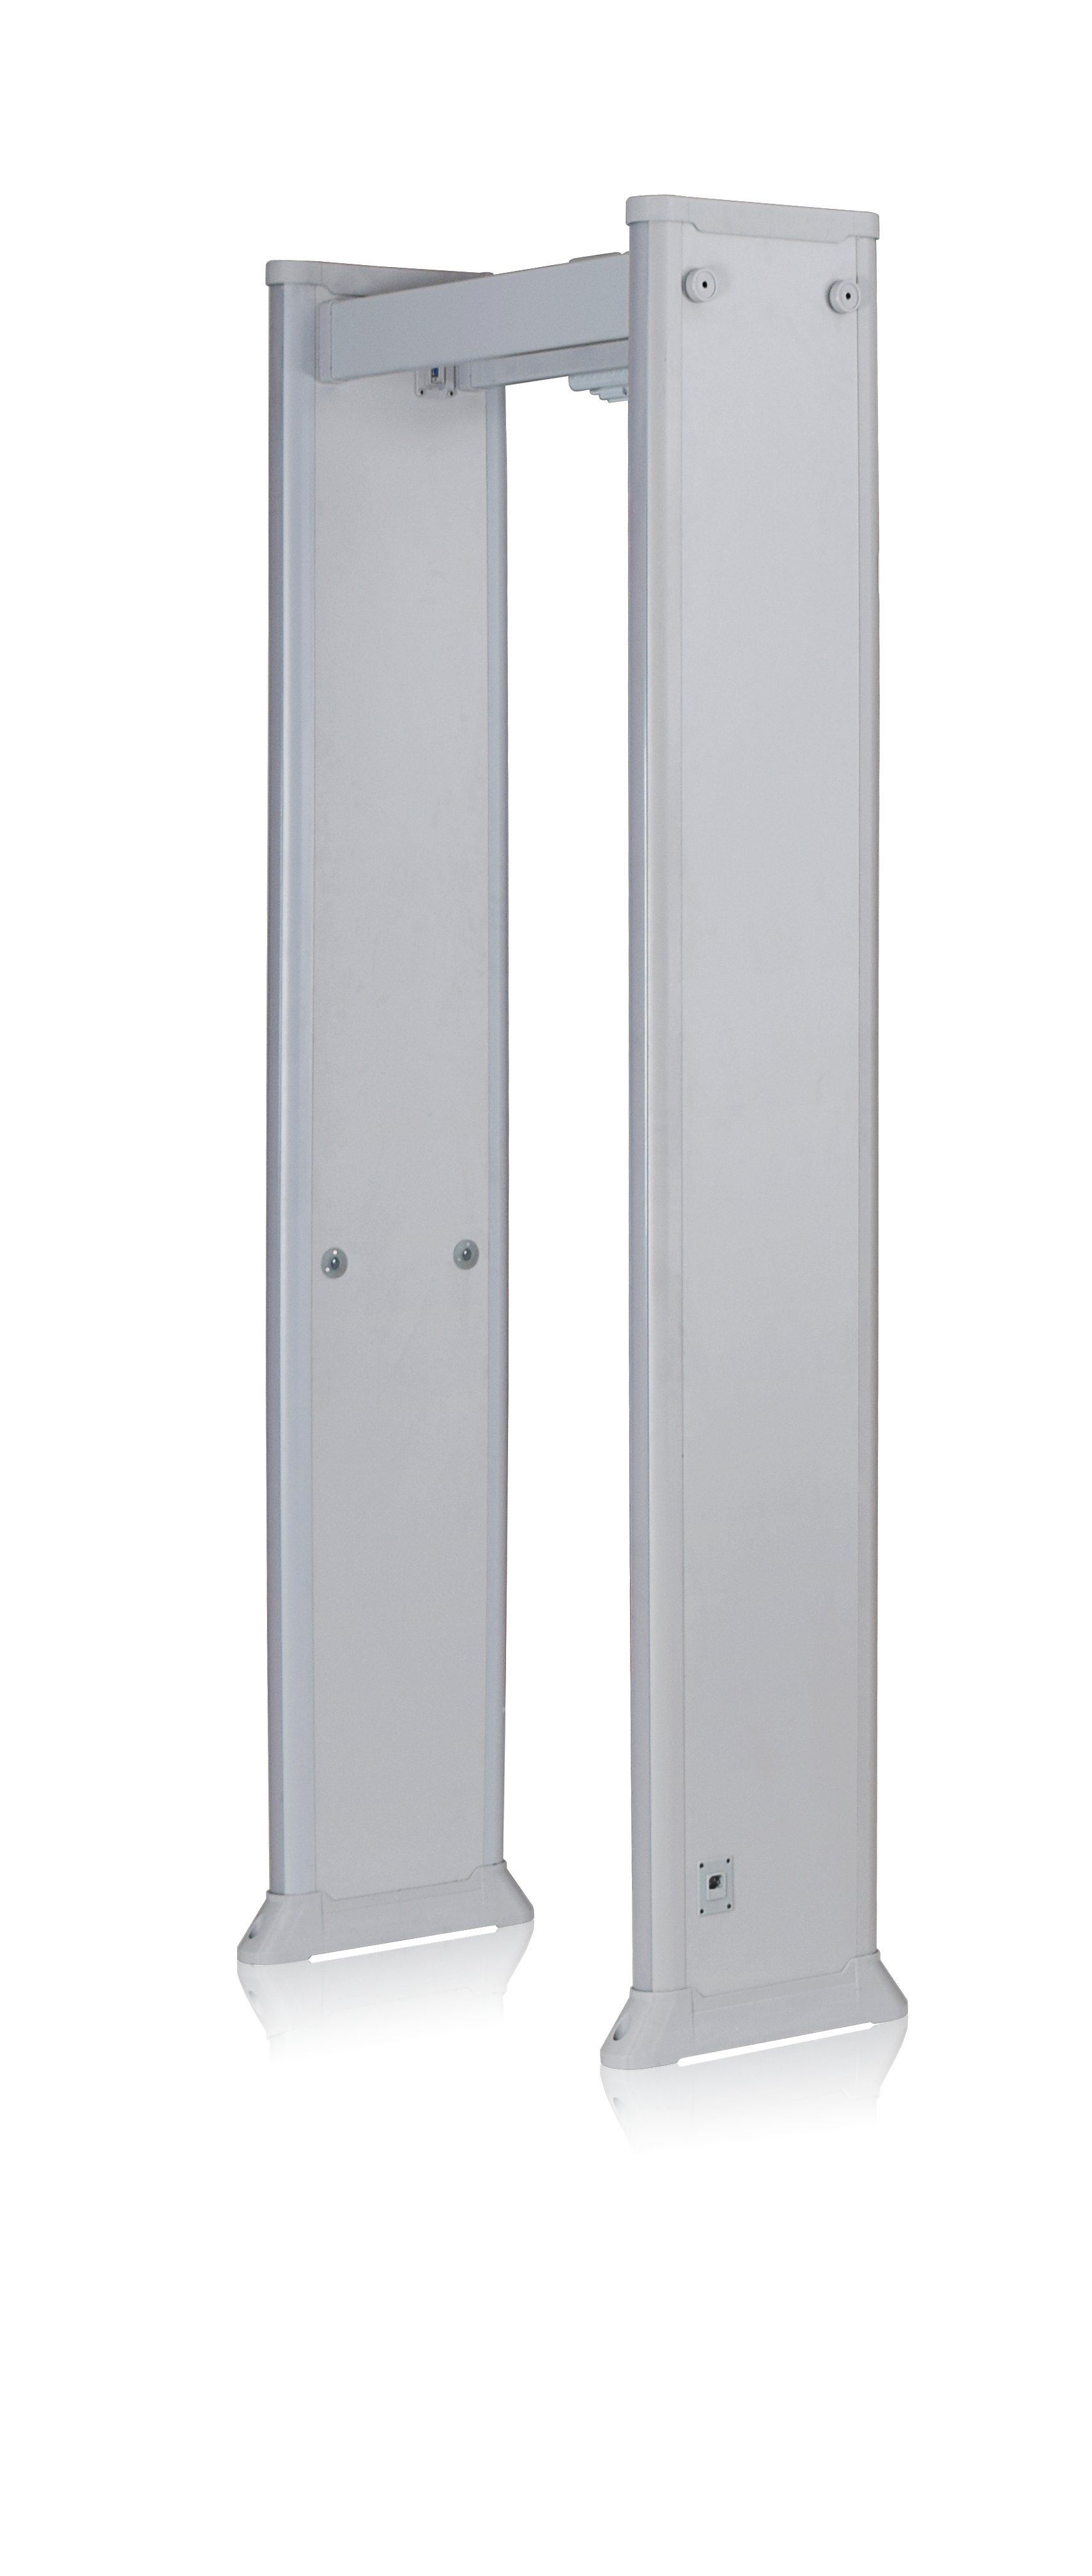  Marco de la puerta anti-interferencia detector de metal Archway Detector de metal Guerra de seguridad